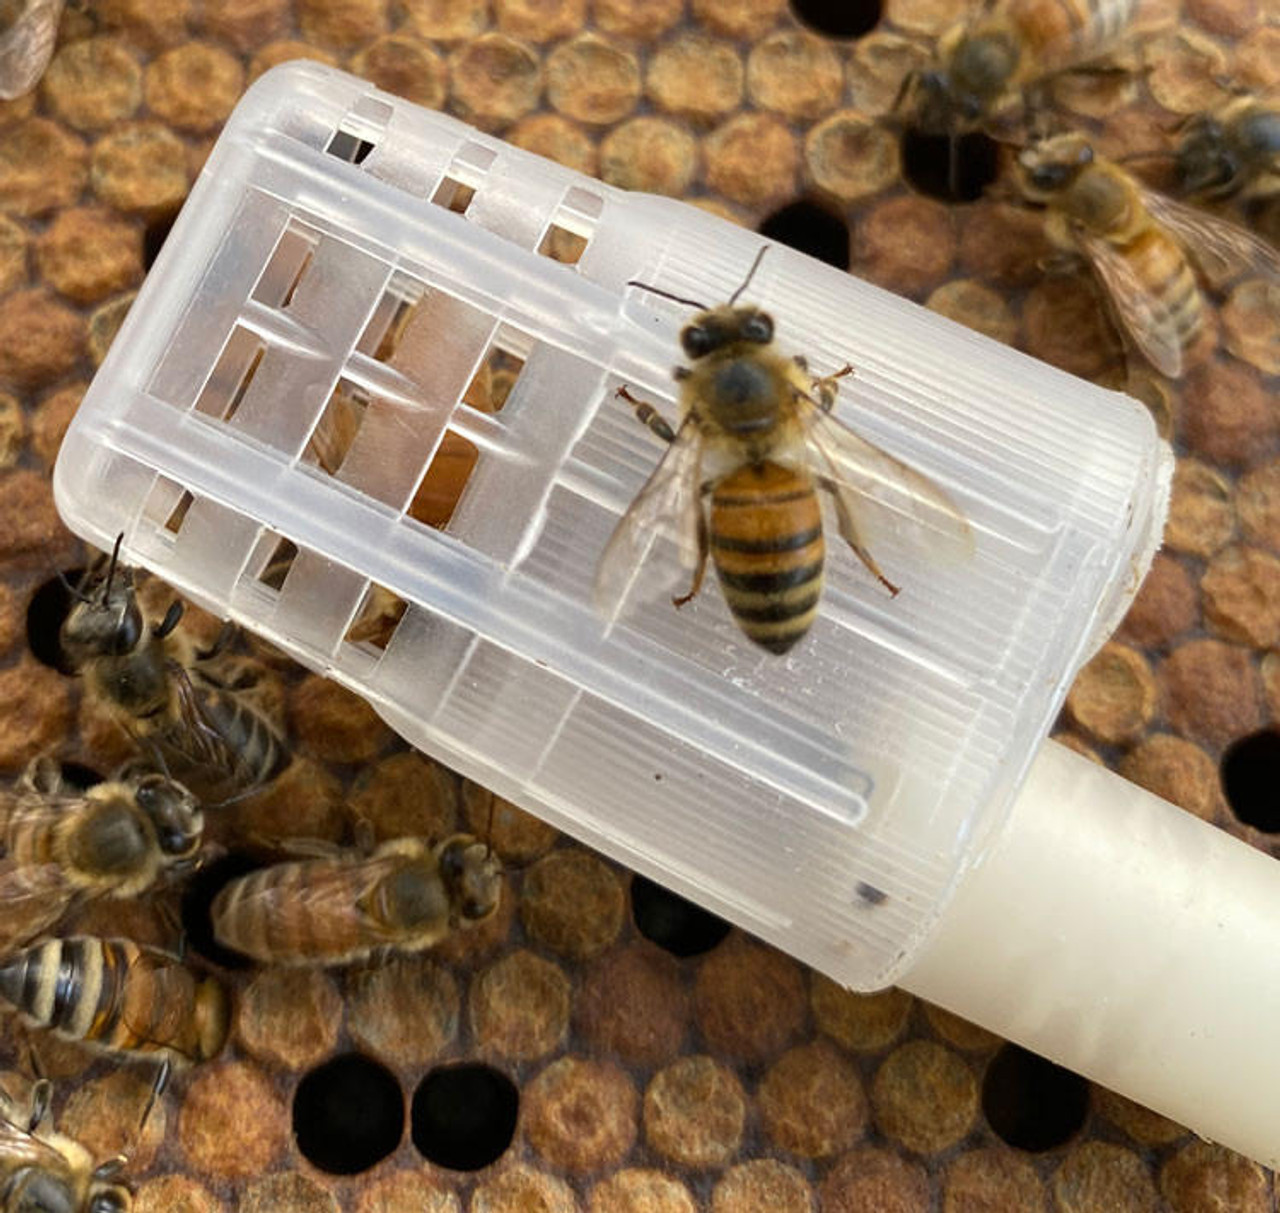 Queen Bee Towel — CAPITAL BEE COMPANY